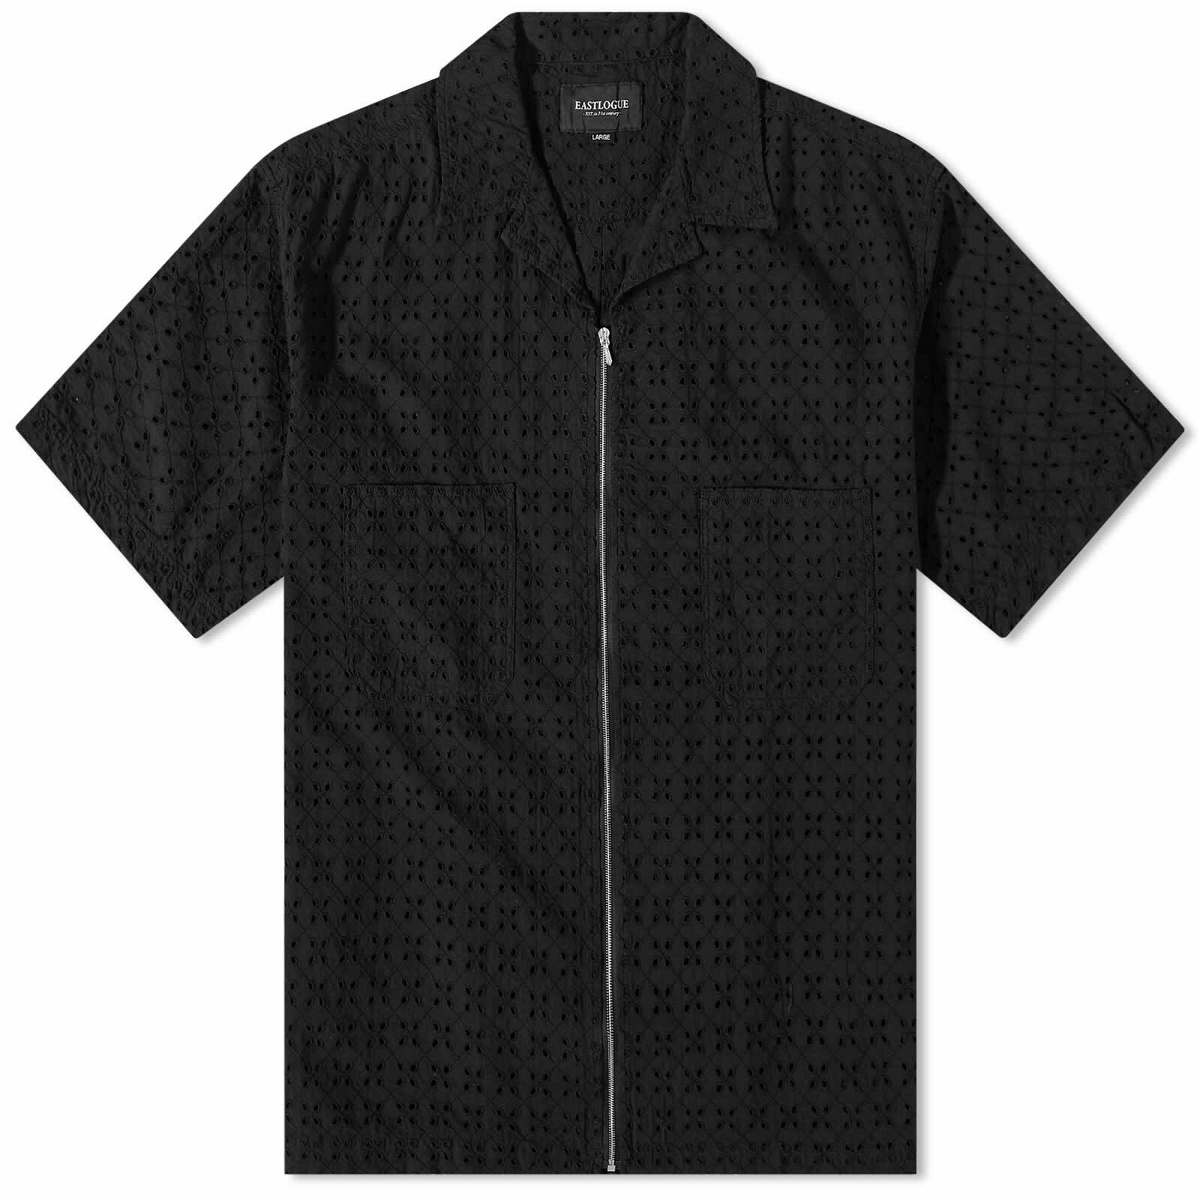 Eastlogue Men's Mechanic Zip Short Sleeve Shirt in Black Crochet Eastlogue